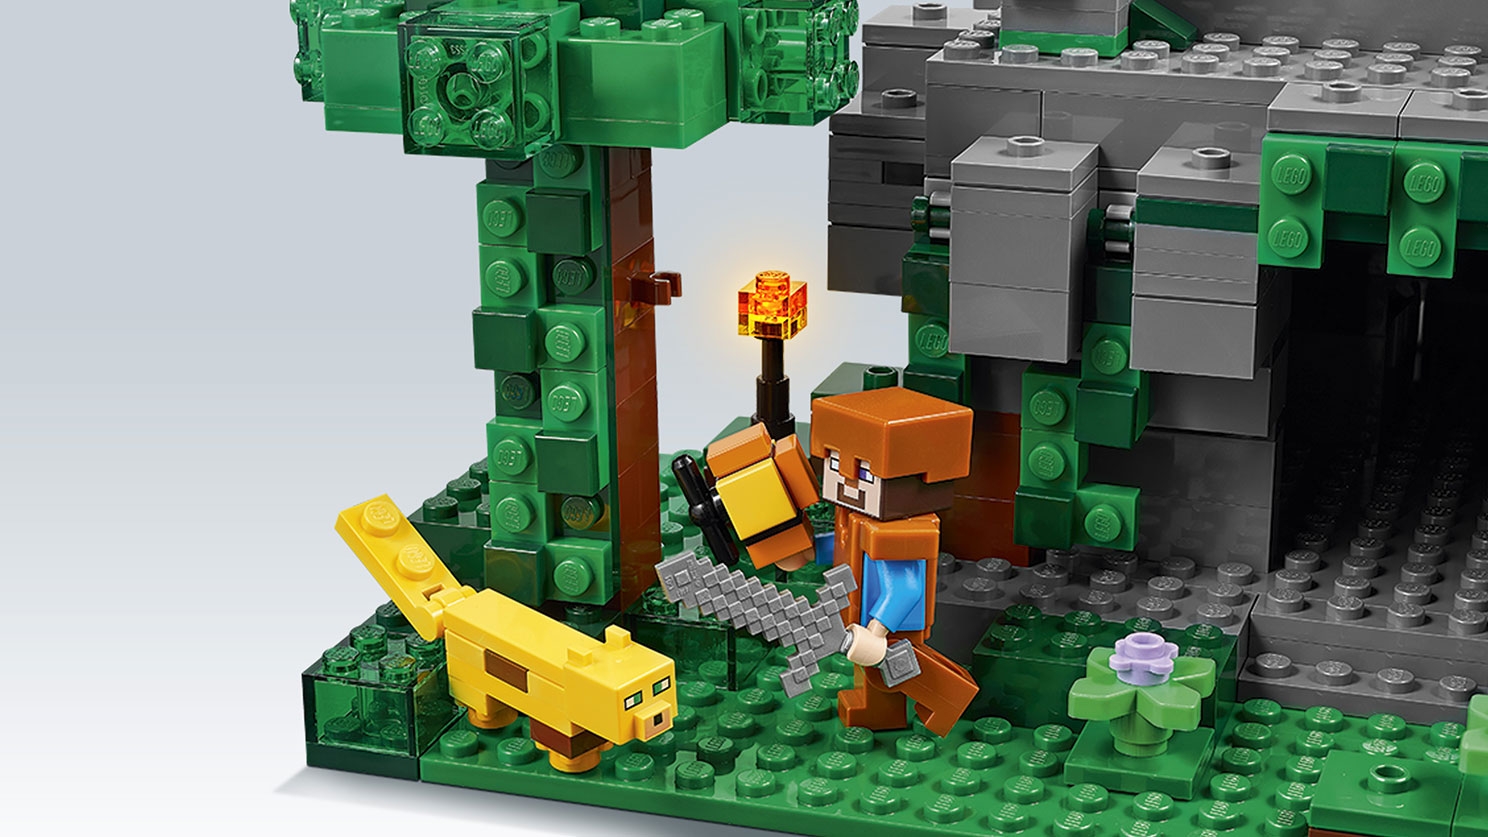 ジャングルの寺院 レゴ マインクラフト セット Lego Comキッズ